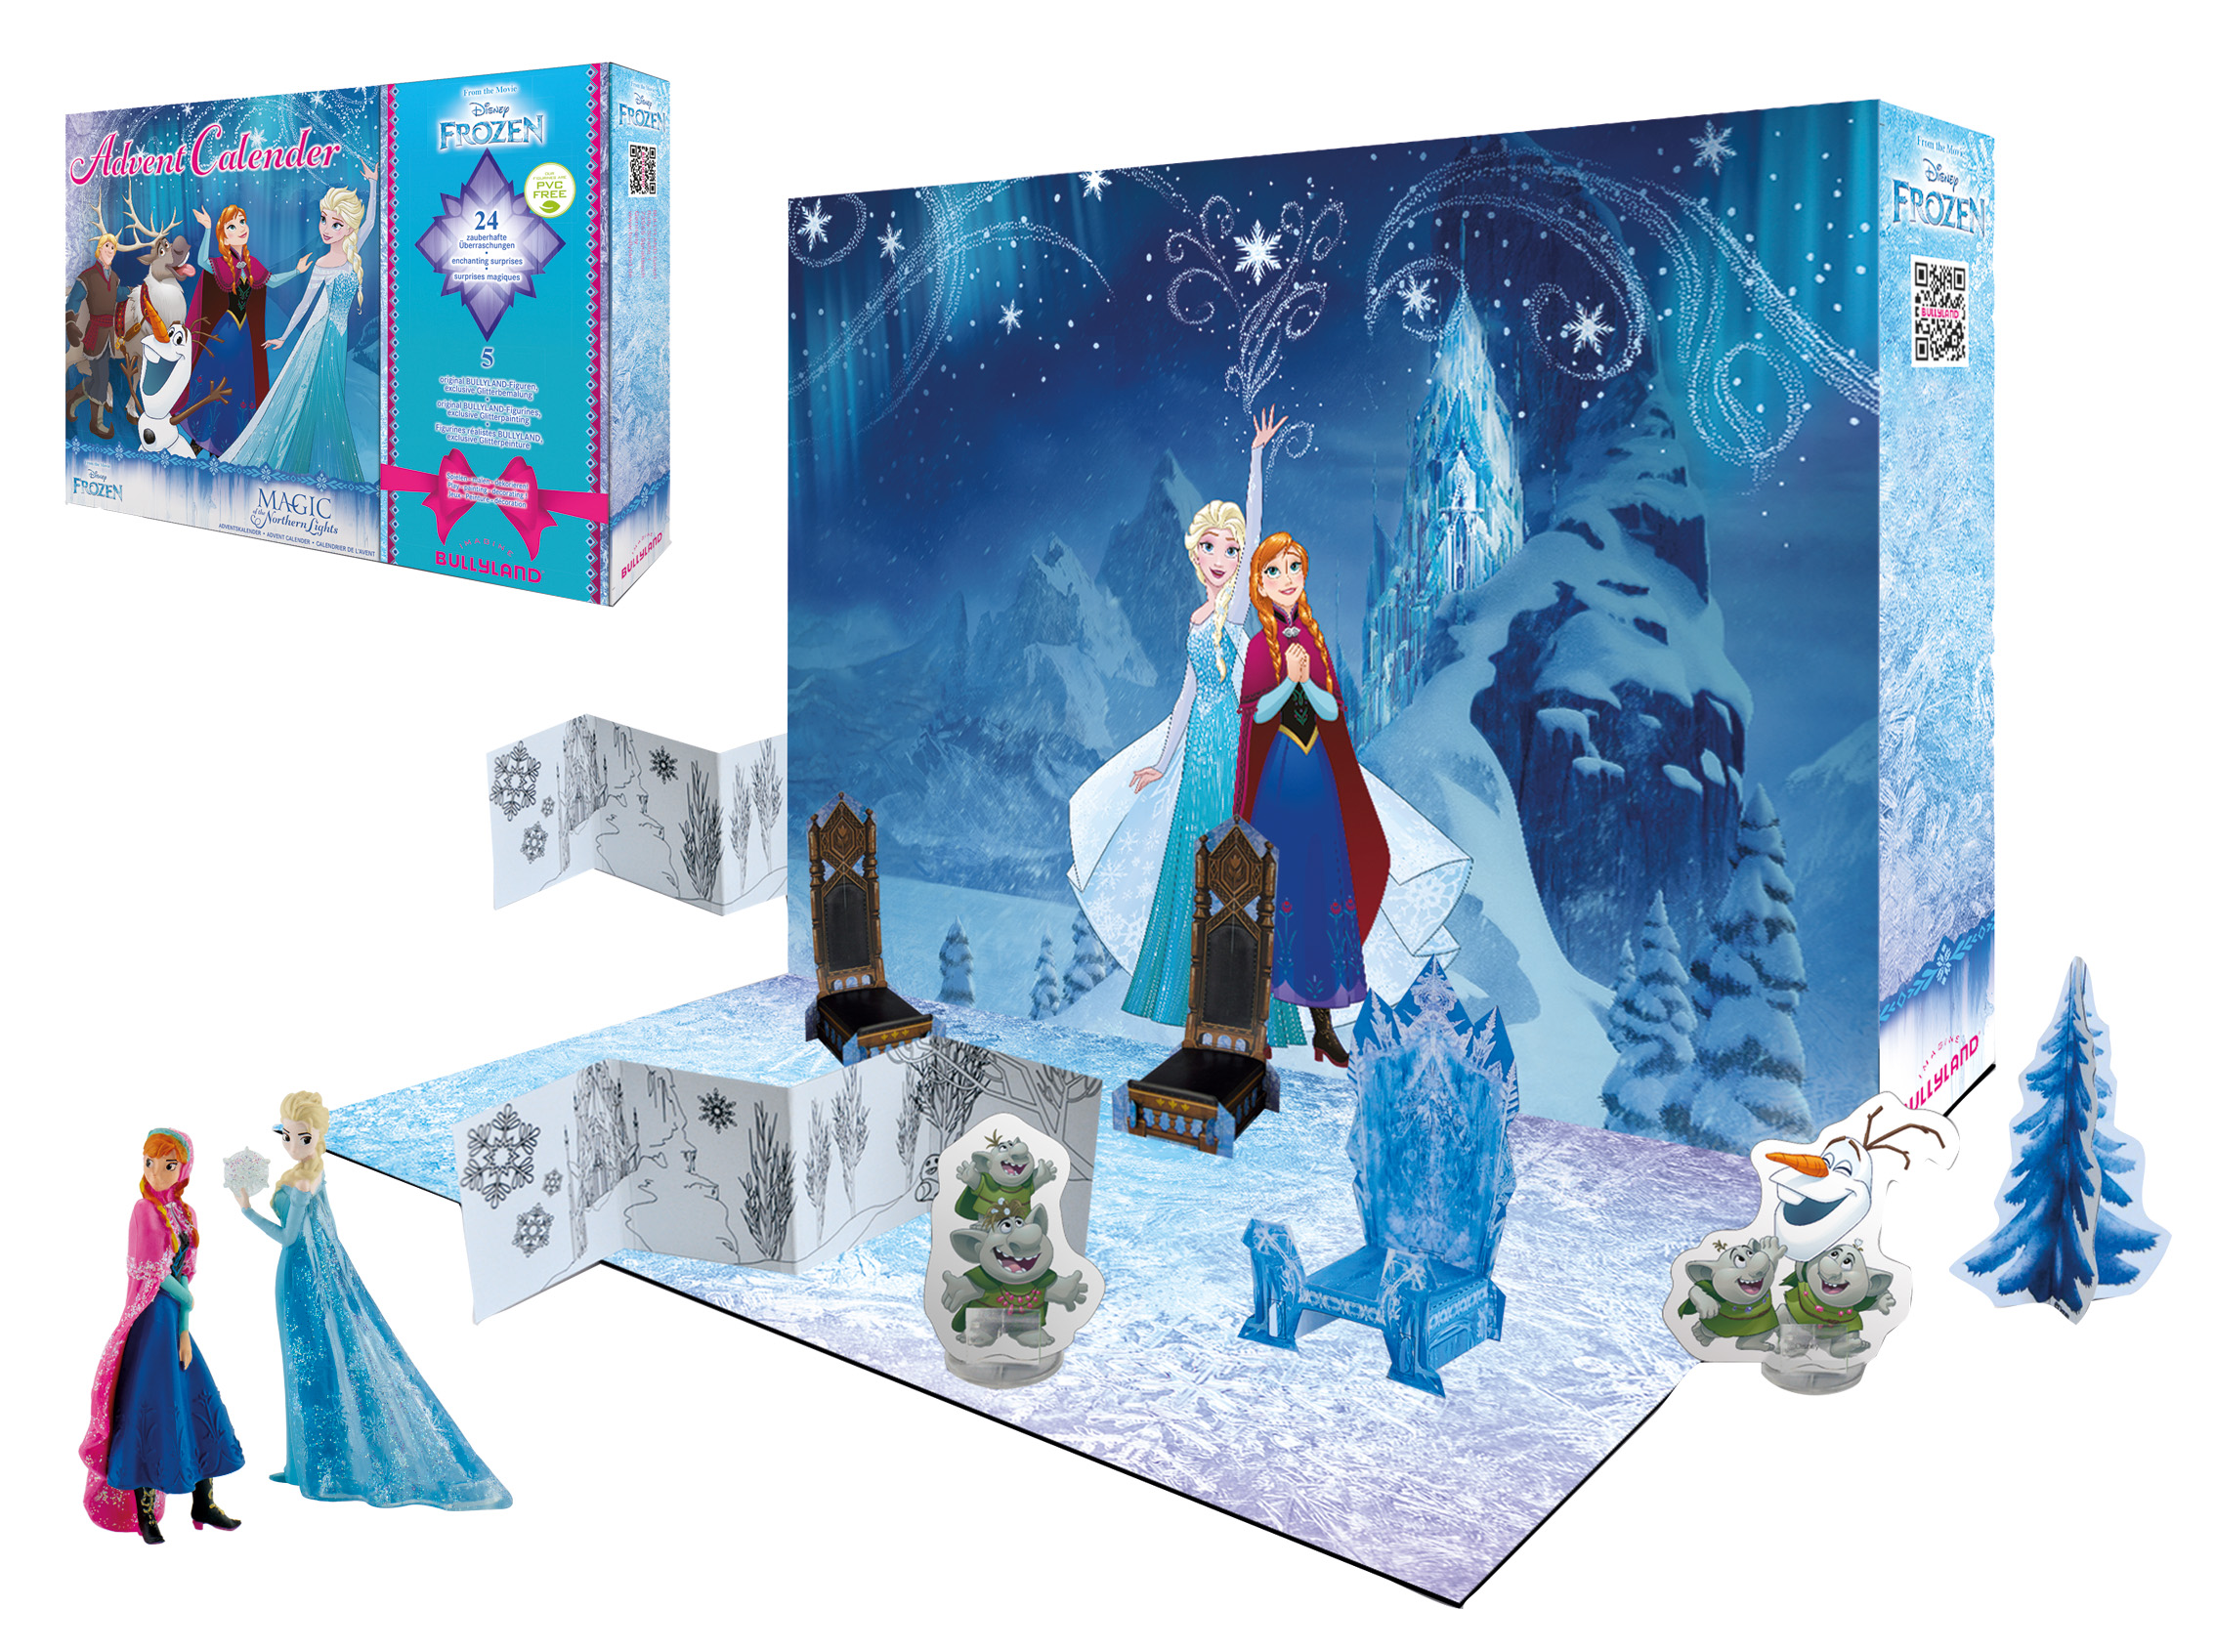 Disney Frozen 2 Die Eiskönigin Adventskalender Bullyland Anna Elsa Advent 